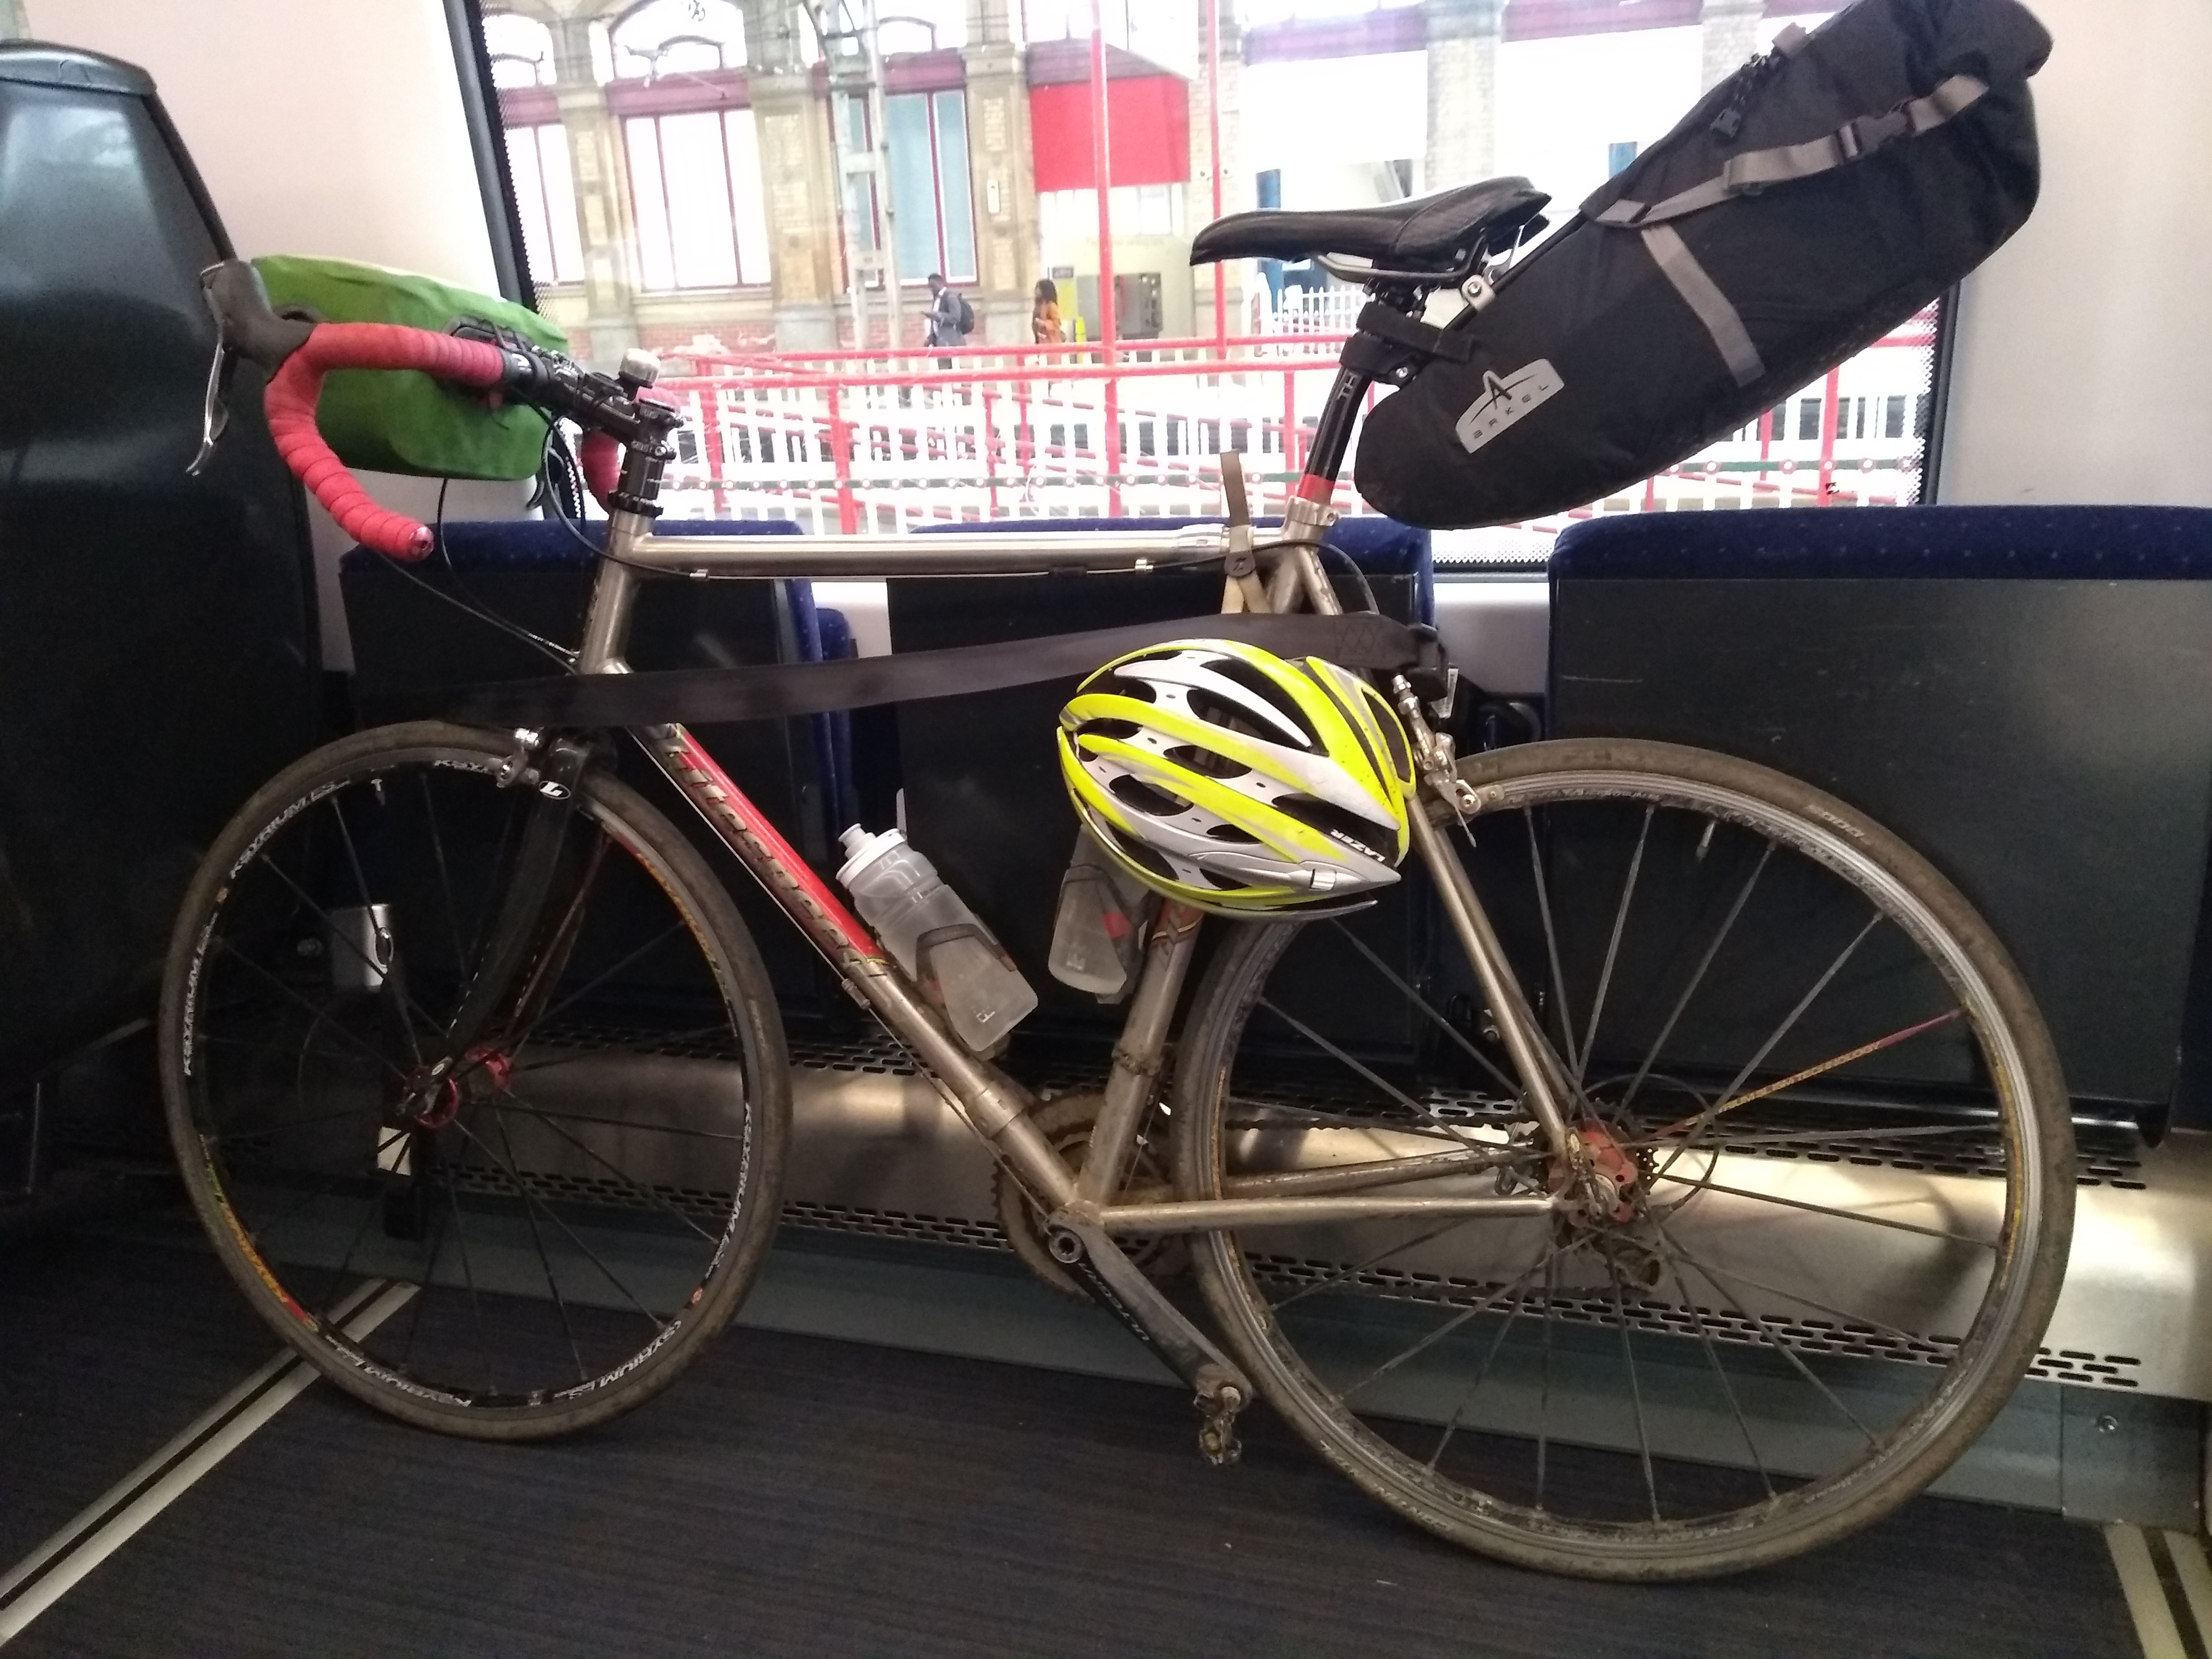 Bike on the train